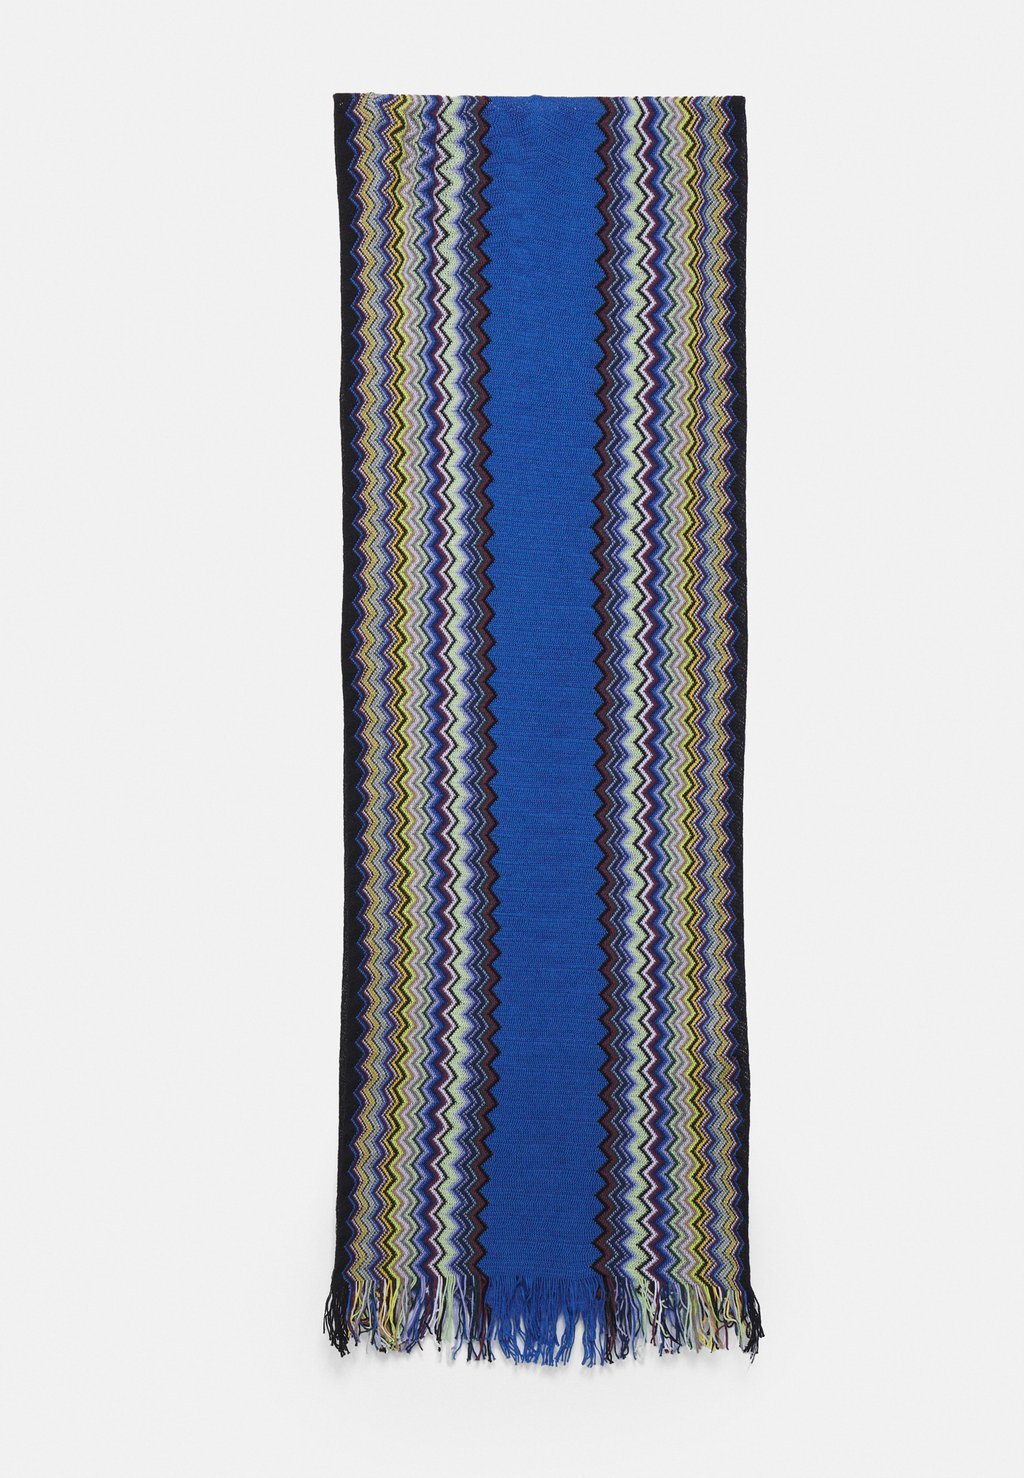 галстук tie unisex missoni цвет red blue Шарф SCARF UNISEX Missoni, цвет blue mix